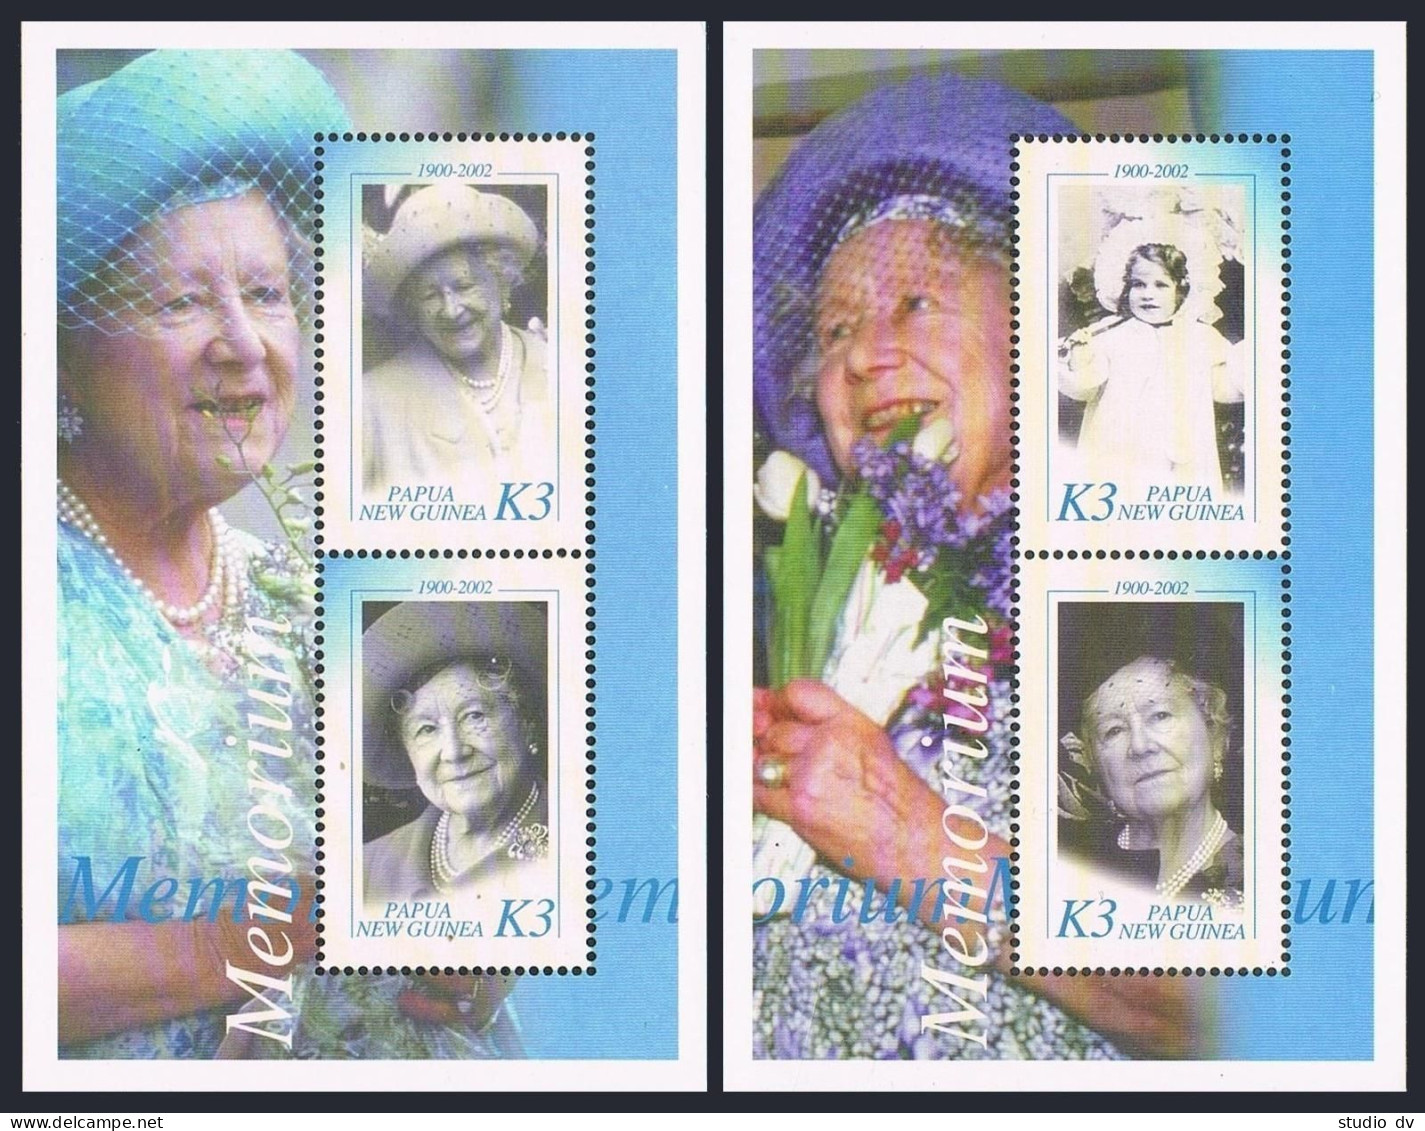 Papua New Guinea 1044 Ag,1045-1046 Sheets,MNH. Queen Mother Elizabeth,1900-2002. - Papouasie-Nouvelle-Guinée